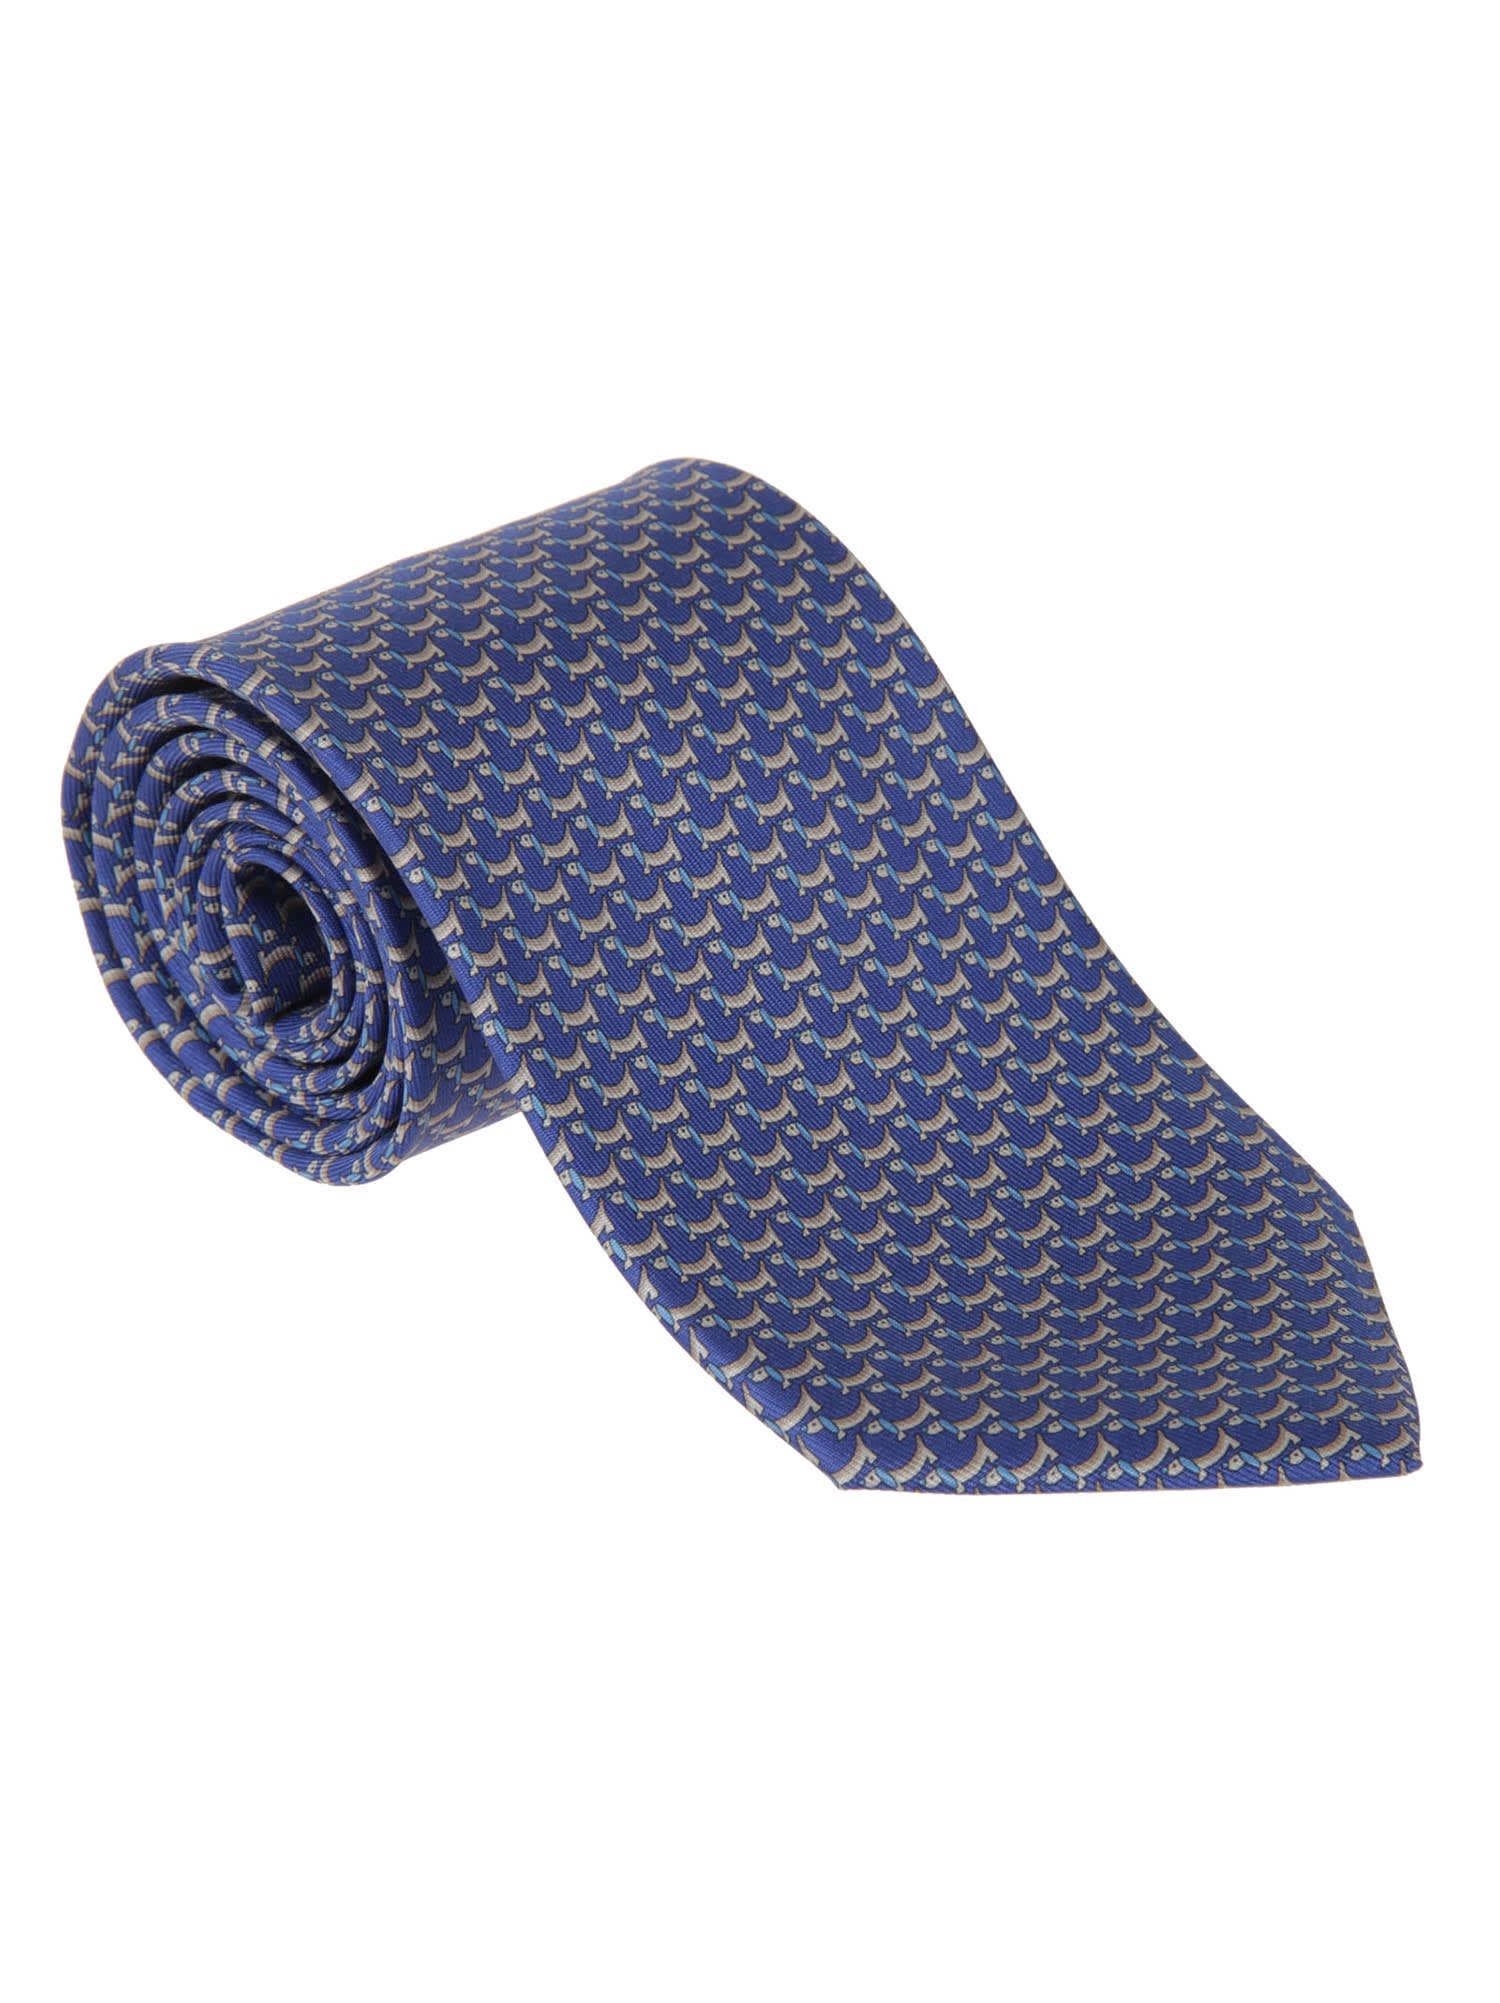 Salvatore Ferragamo Salvatore Ferragamo Patterned Tie - Bluette ...